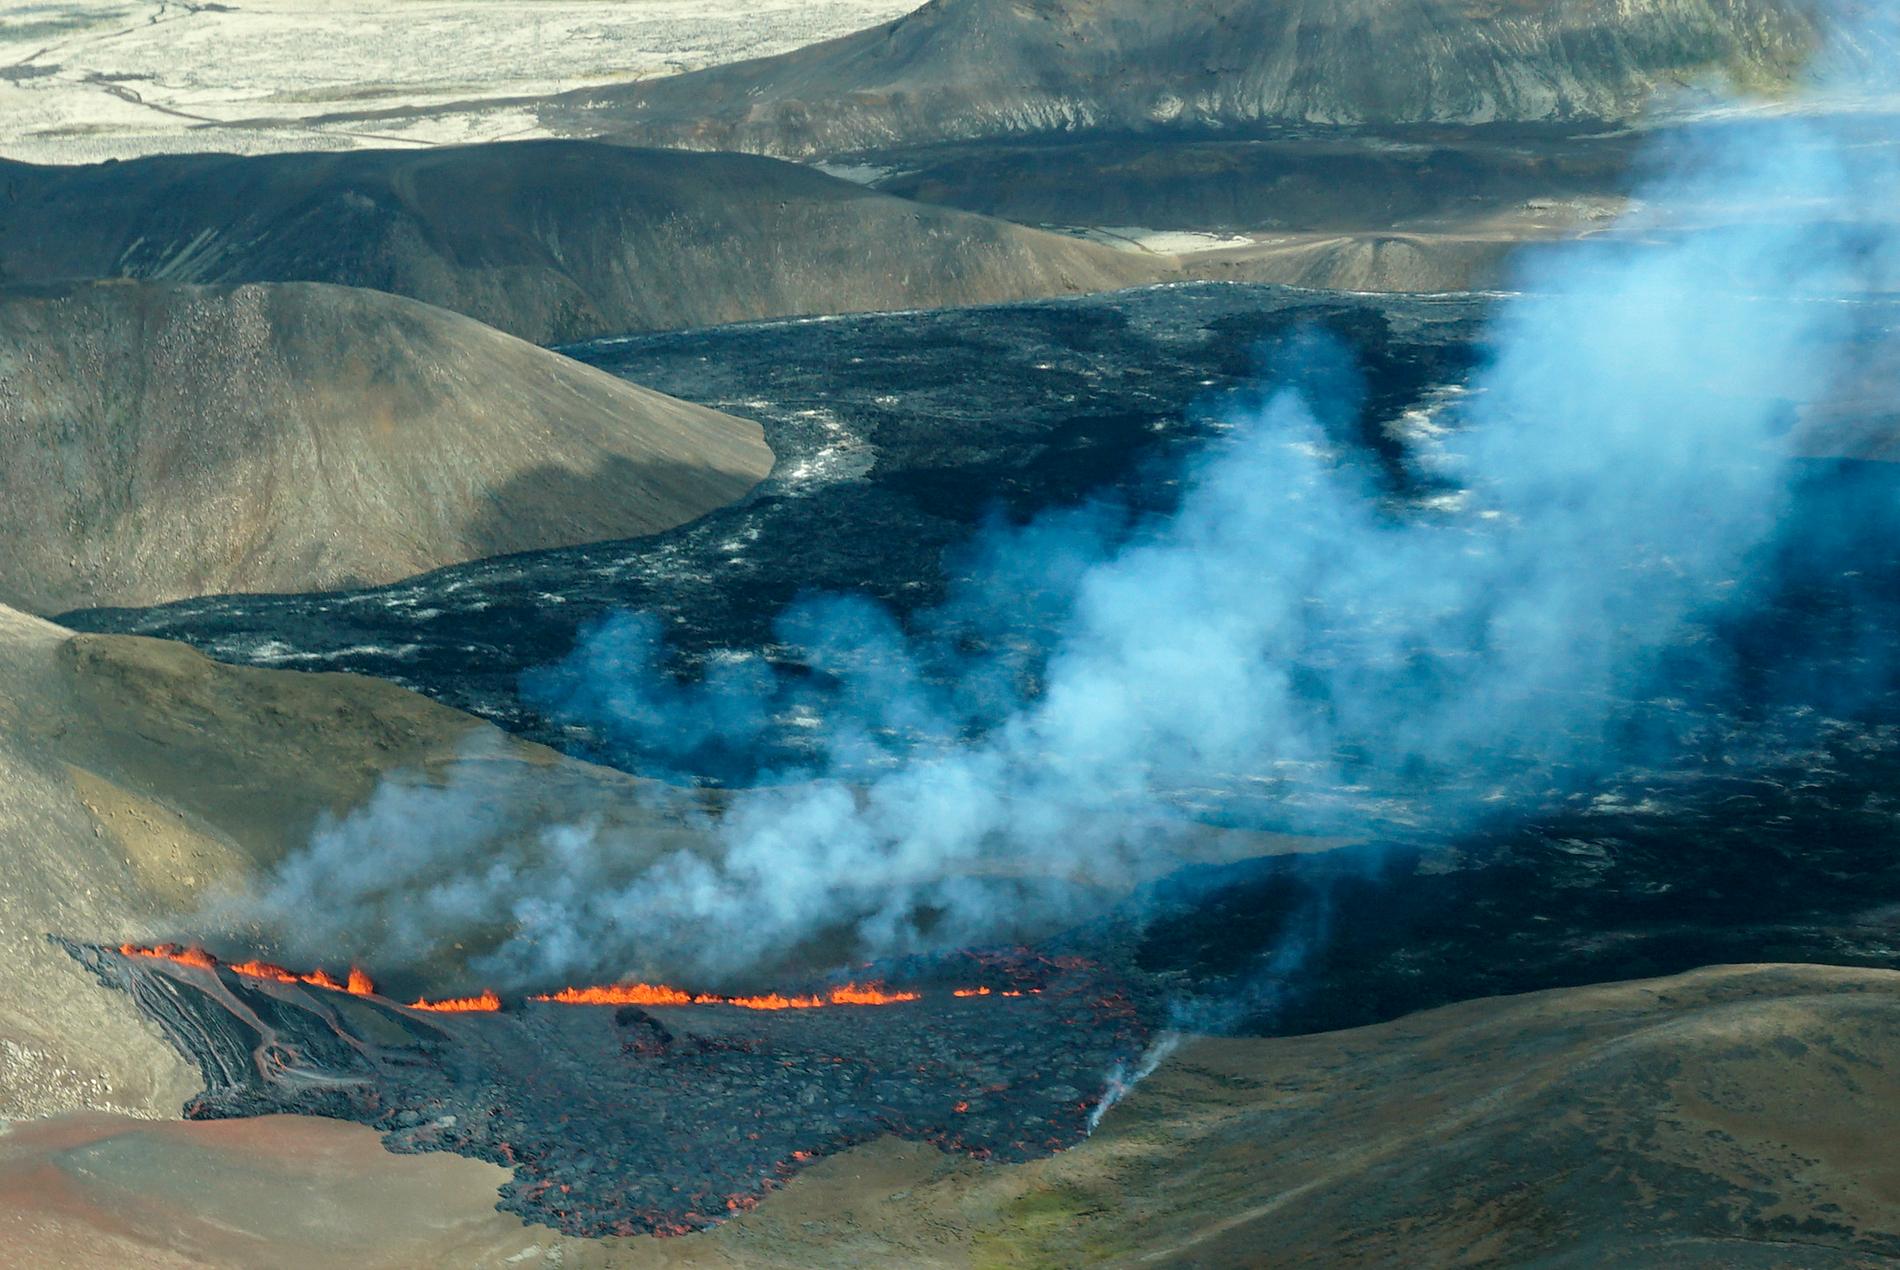 Vulkanutbrottet på Island.